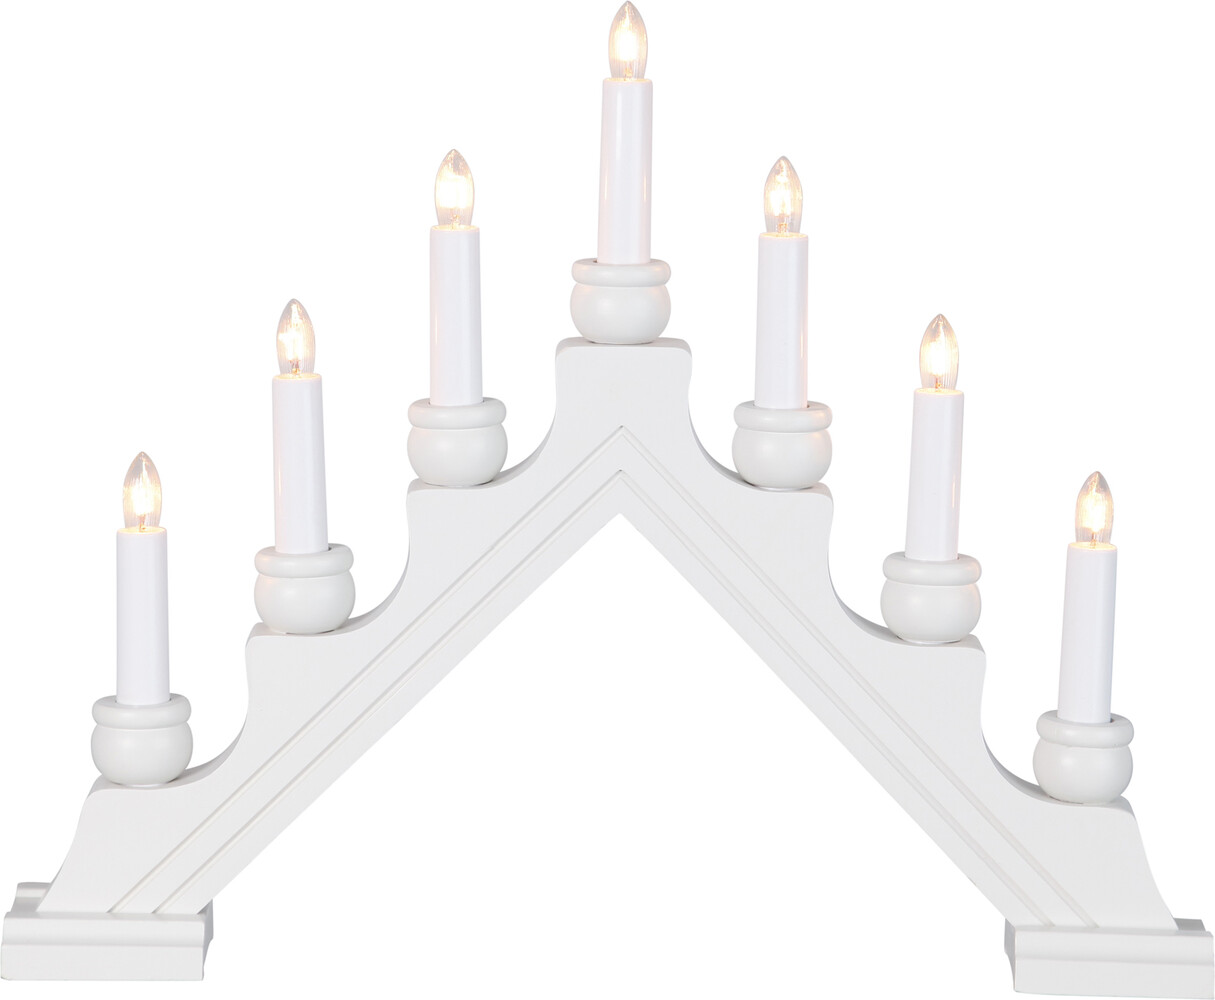 Stilvoller weißer Leuchter von Star Trading, bemerkenswert mit sieben Flammen und aus Holz gefertigt